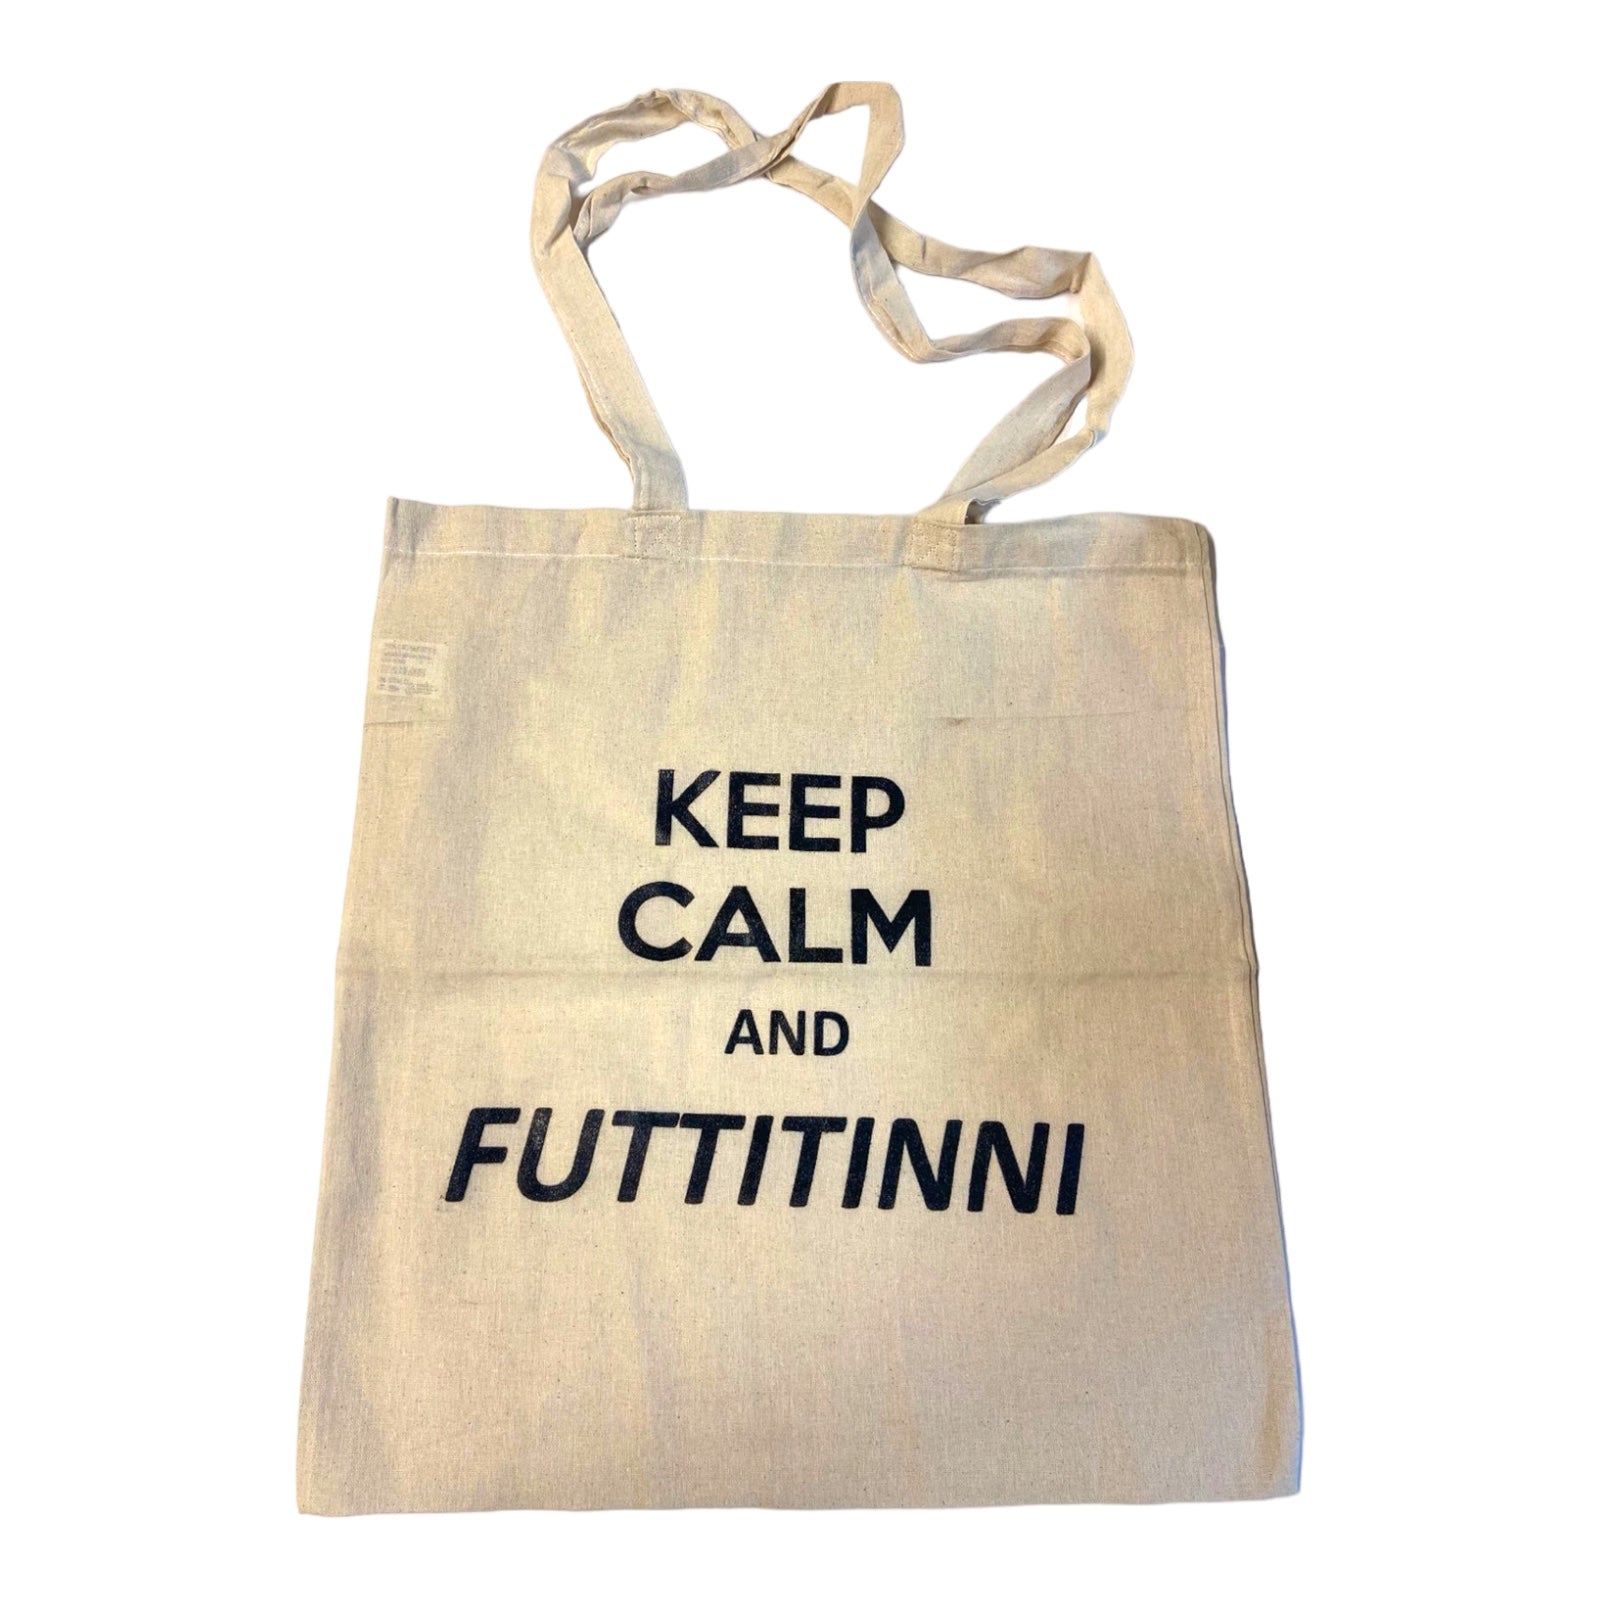 Keep Calm and Futtitinni Tote bag 100% Cotton